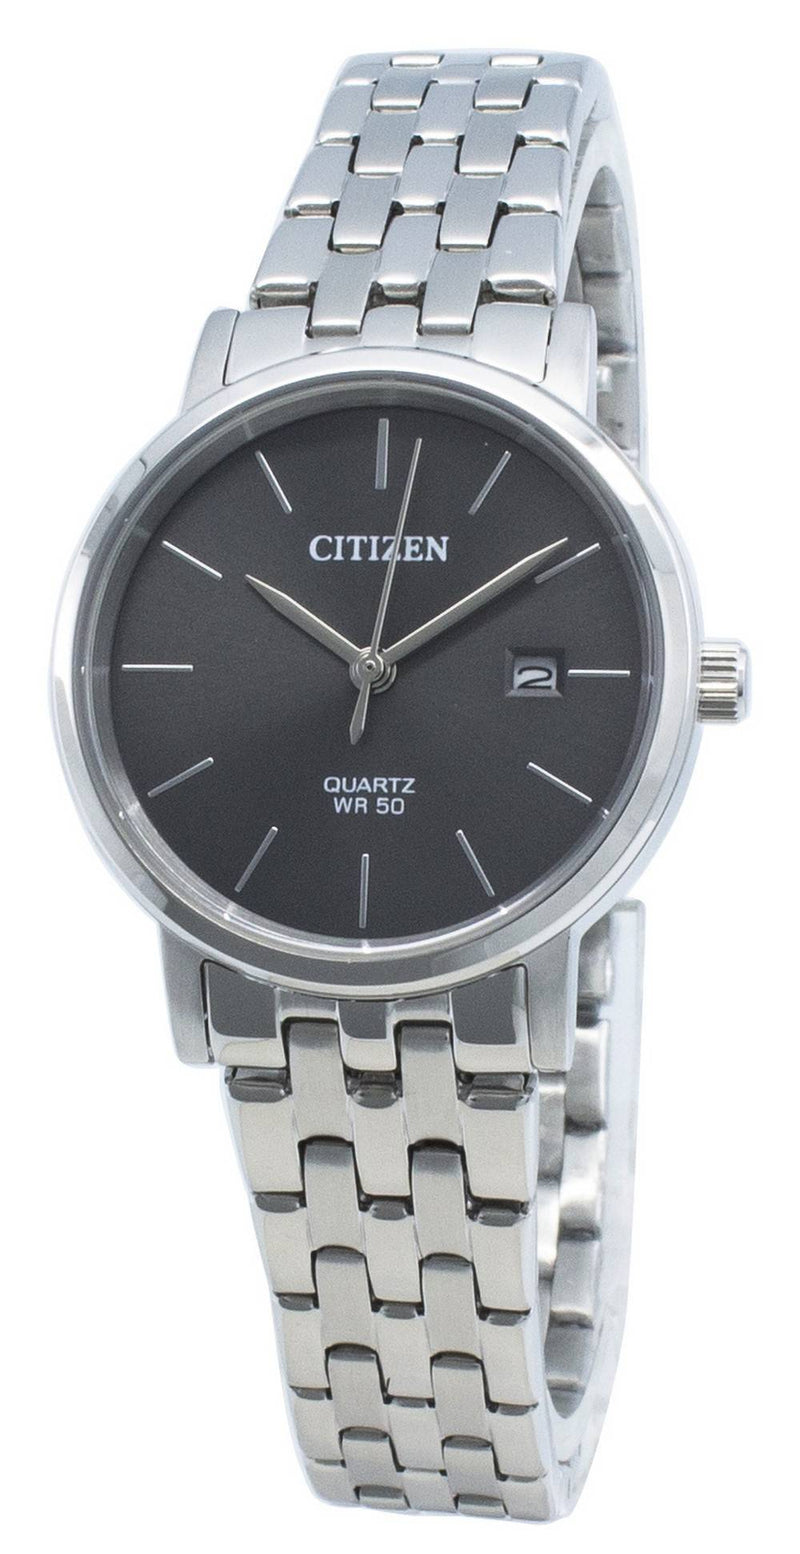 Citizen EU6090-54H Quartz Women's Watch